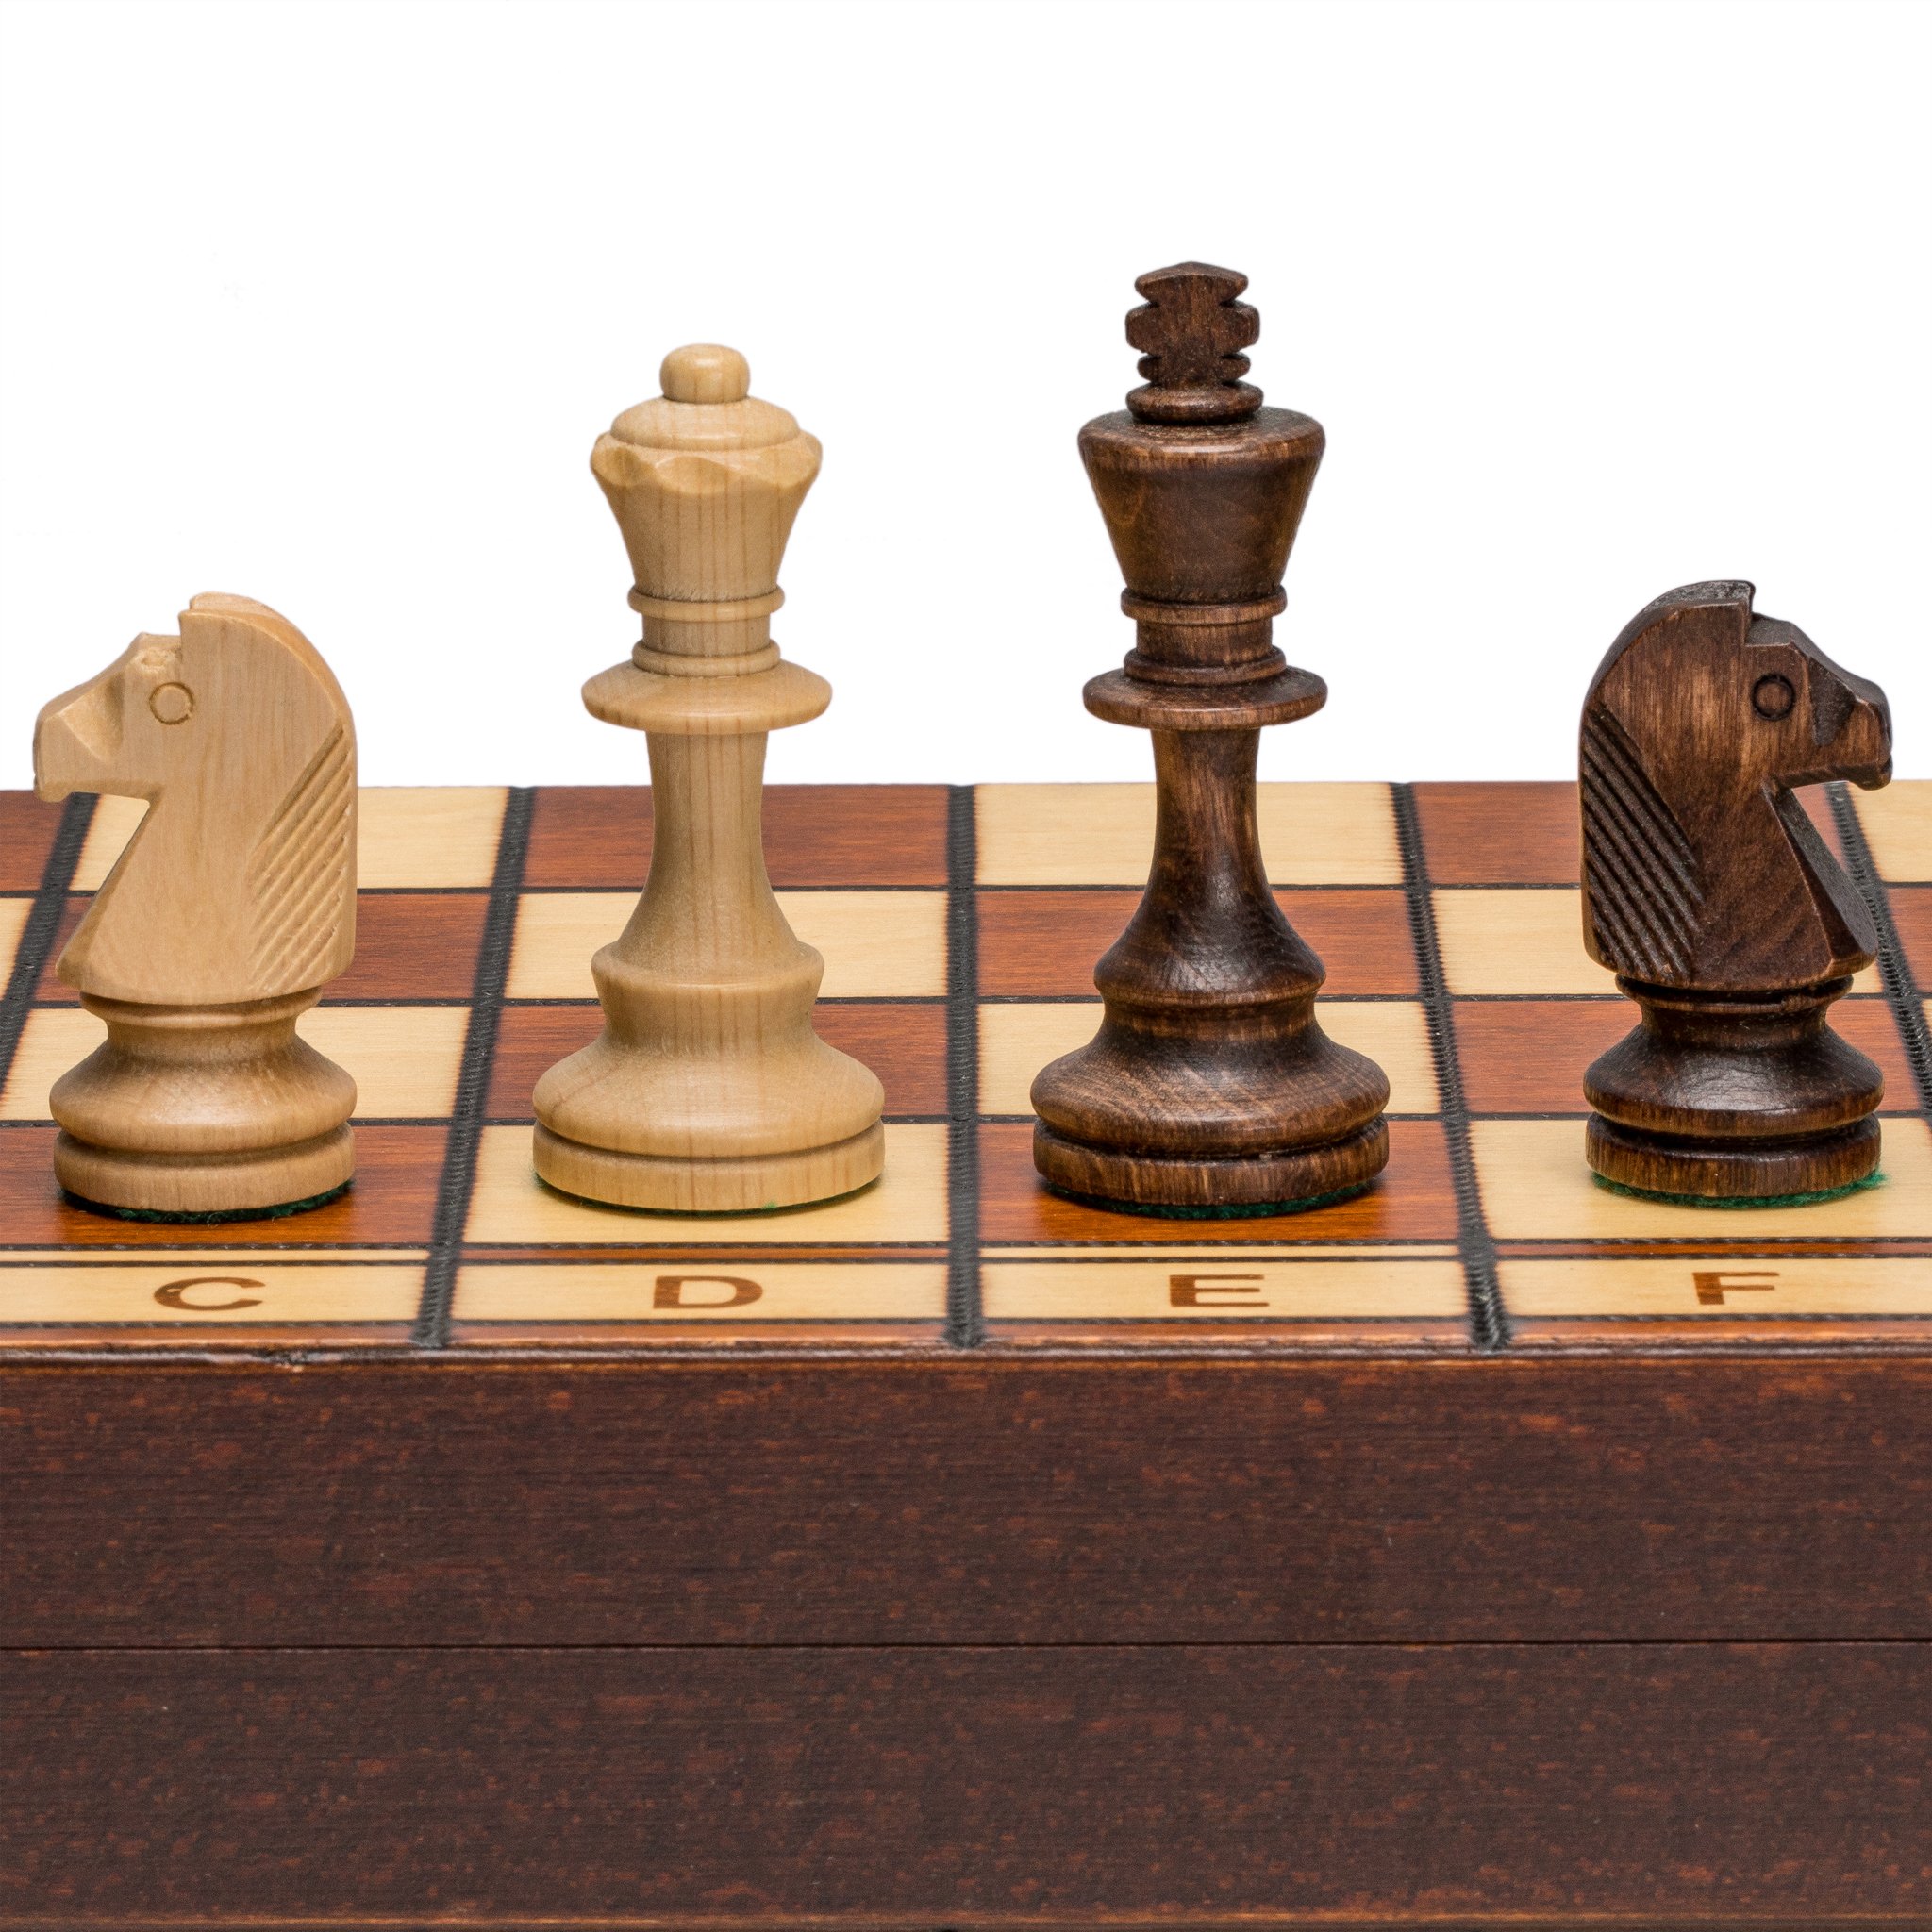 チェスセット Wegiel Handmade Jowisz Professional Tournament Chess Set - Wooden 16 Inch Folding Board With Felt Base Hand Carved Chess Pieces - Compartment Inside The Board To Store Each Piece 【並行輸入品】